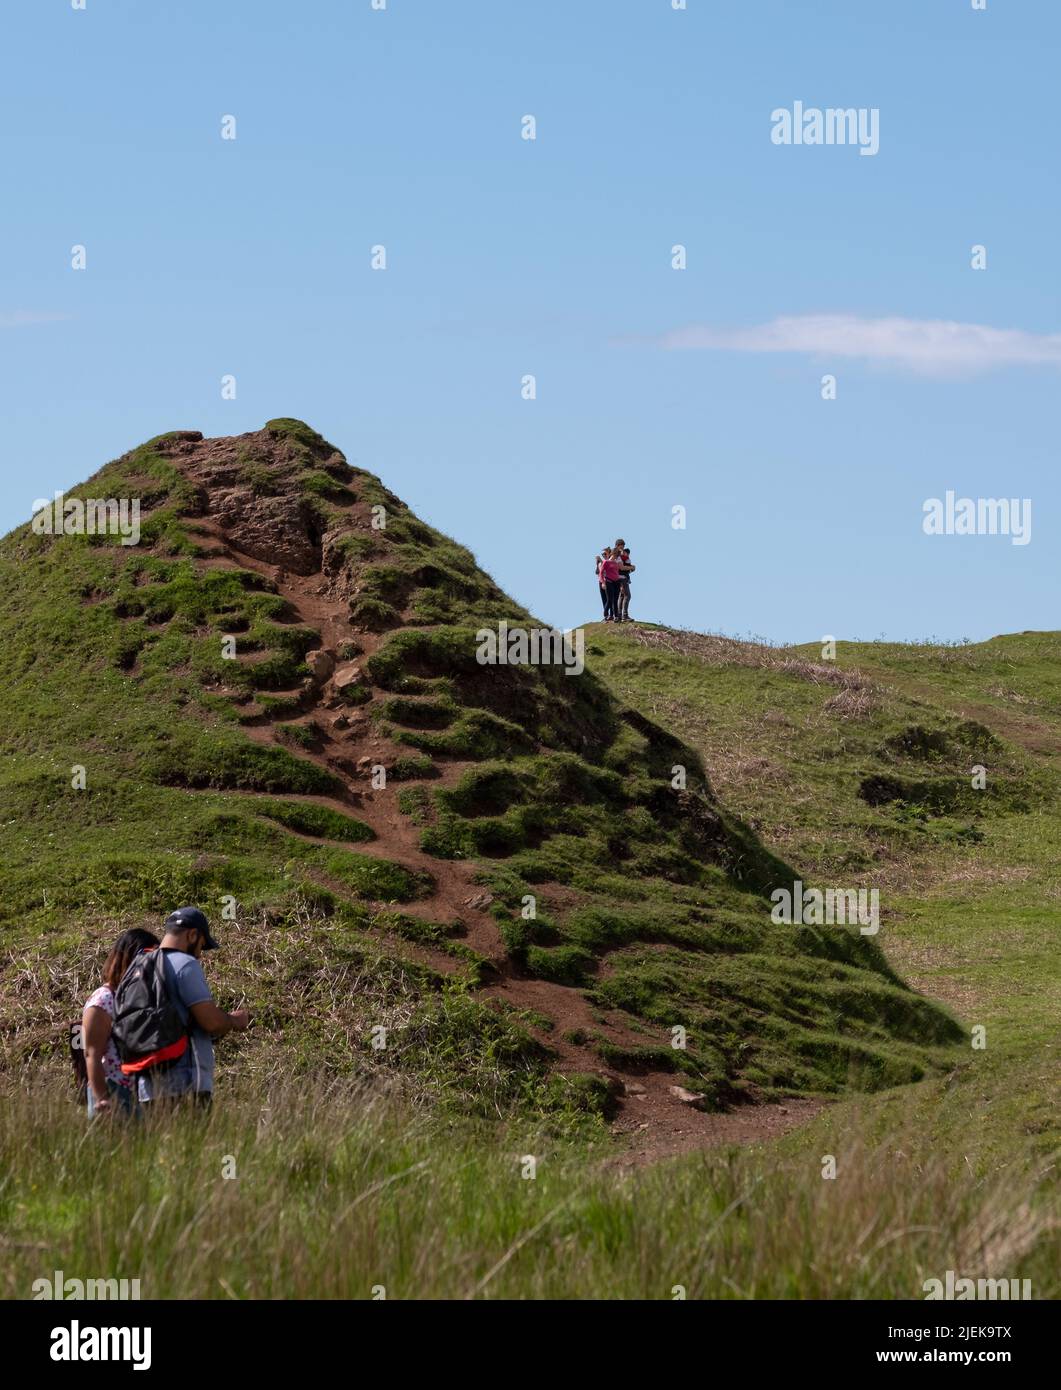 Touristes à Fairy Glen sur la péninsule de Trotternish. Paysage varié avec des collines, des vallées et des falaises de basalte au nord de Skye. La région souffre de surtourisme. Banque D'Images